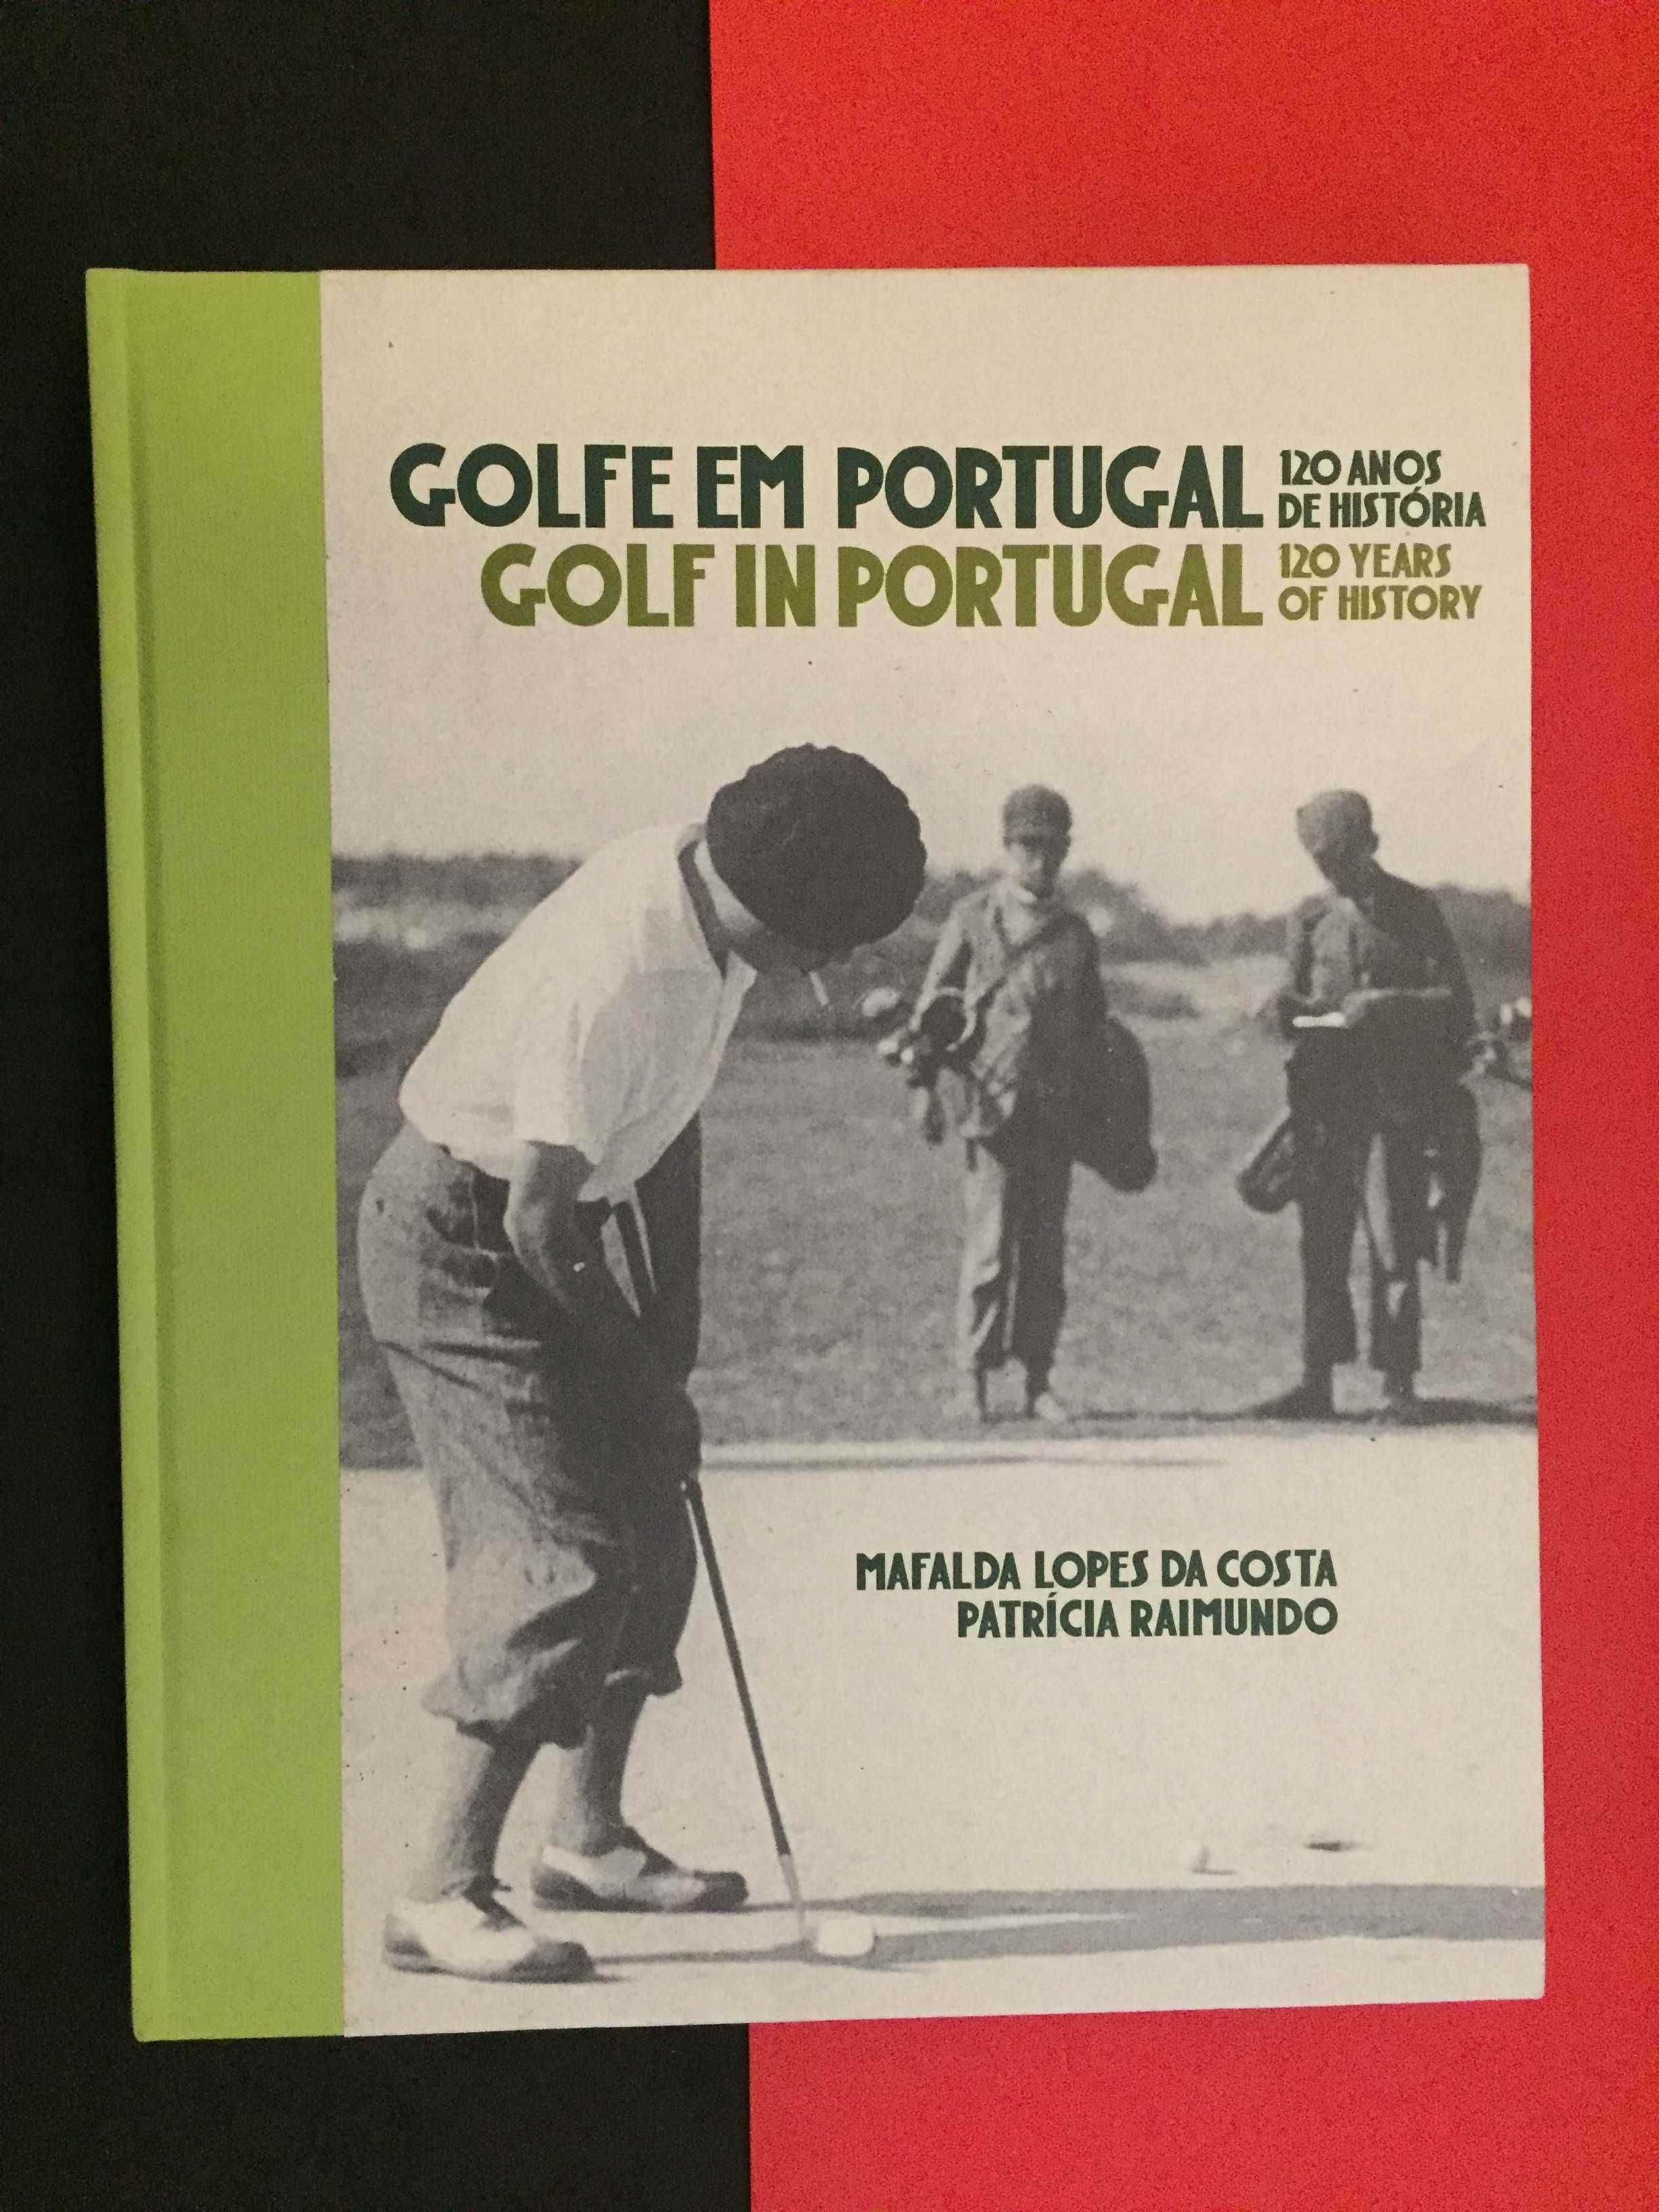 Golfe em Portugal, 120 anos de história.